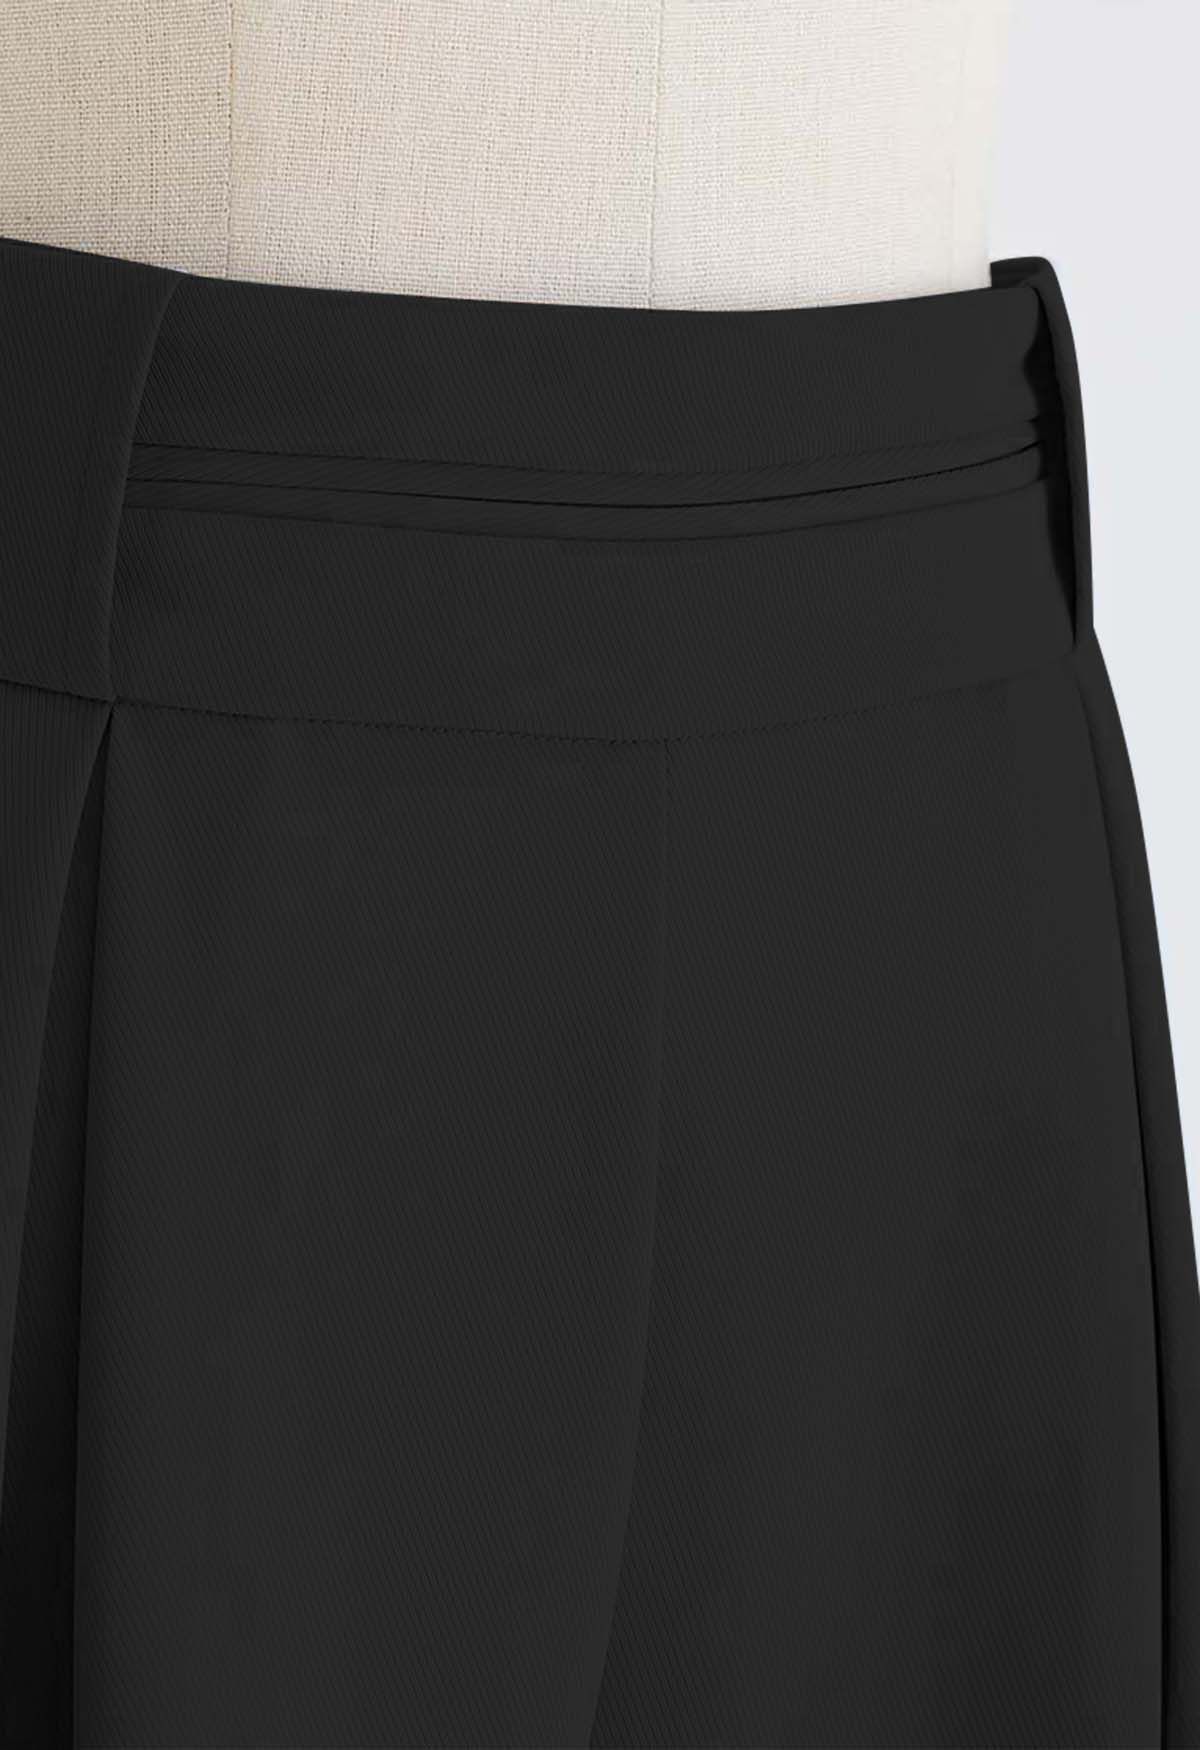 2020 Unique Women's Wide-Leg Pants Stitching Pleated Chiffon Skirt